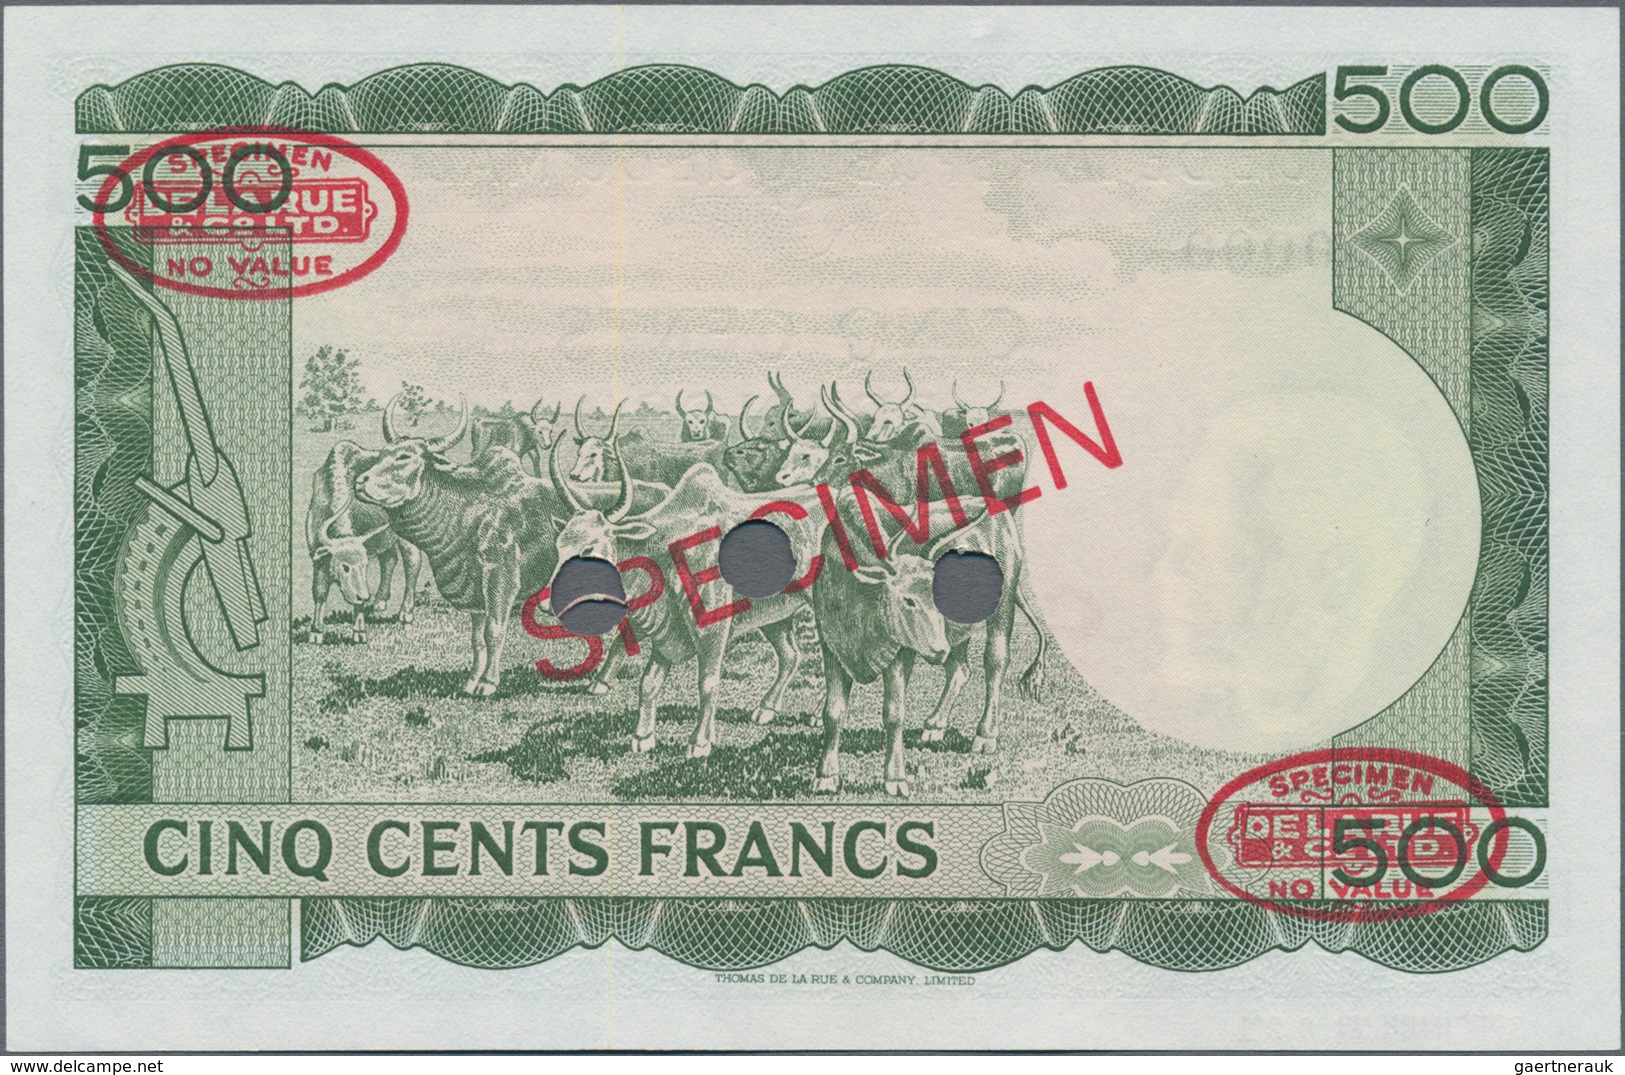 Mali: Banque De La République Du Mali 500 Francs 1960 (1967) SPECIMEN, P.8s In Perfect UNC Condition - Mali